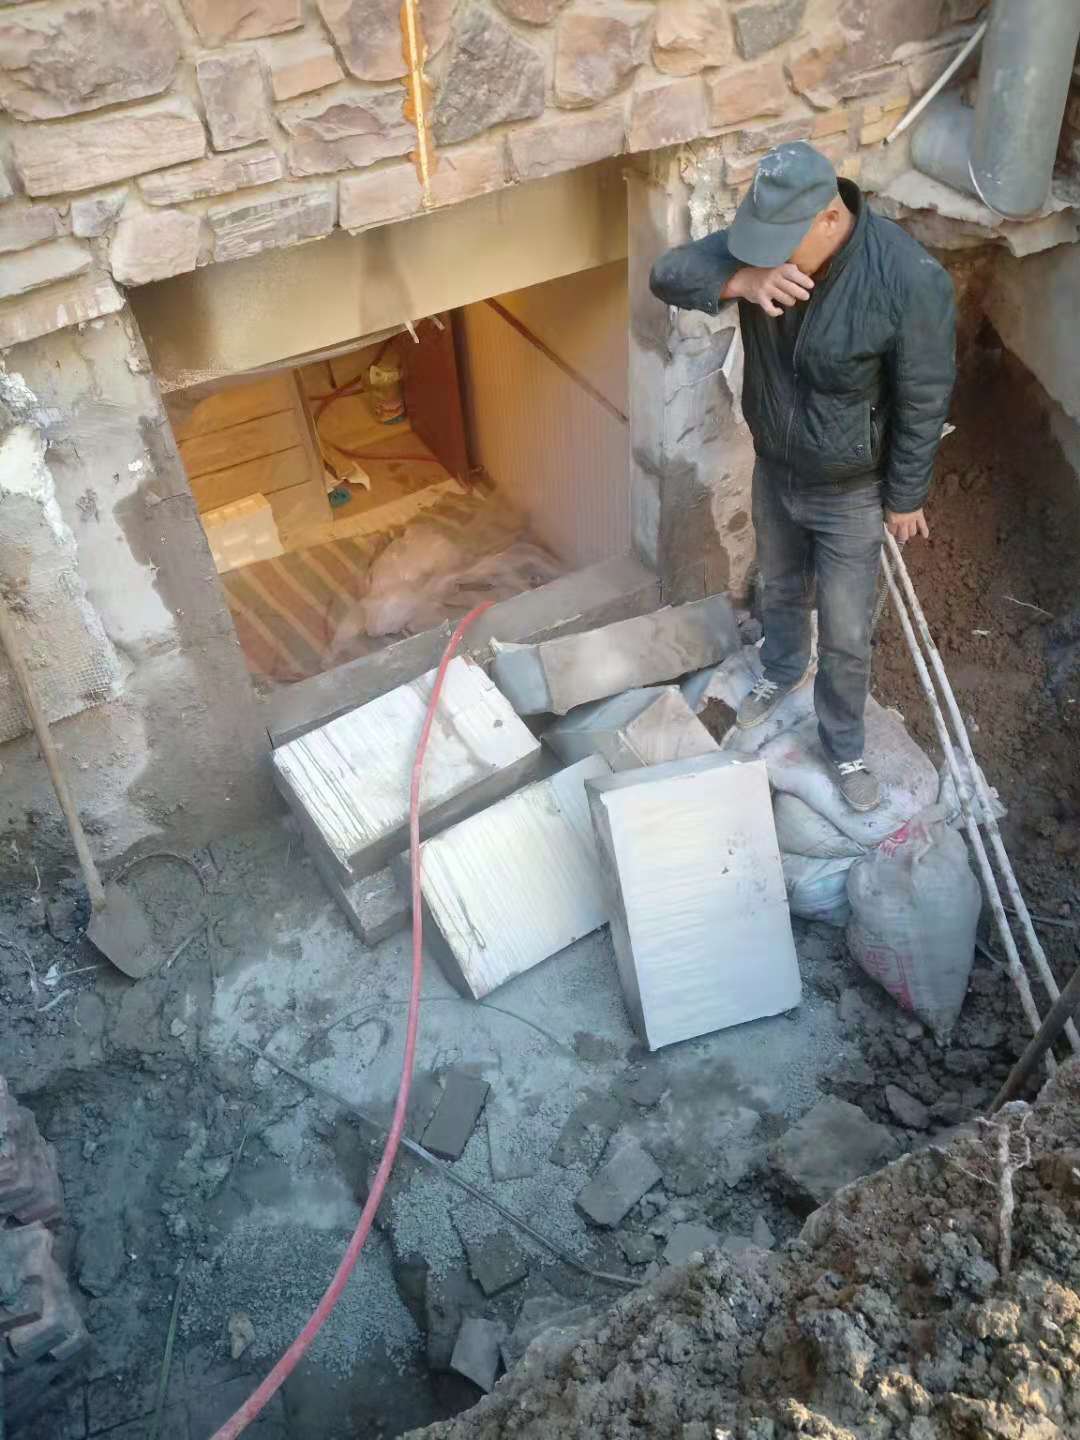 内蒙古混凝土切割工程方案 室内墙体切割 施工速度快